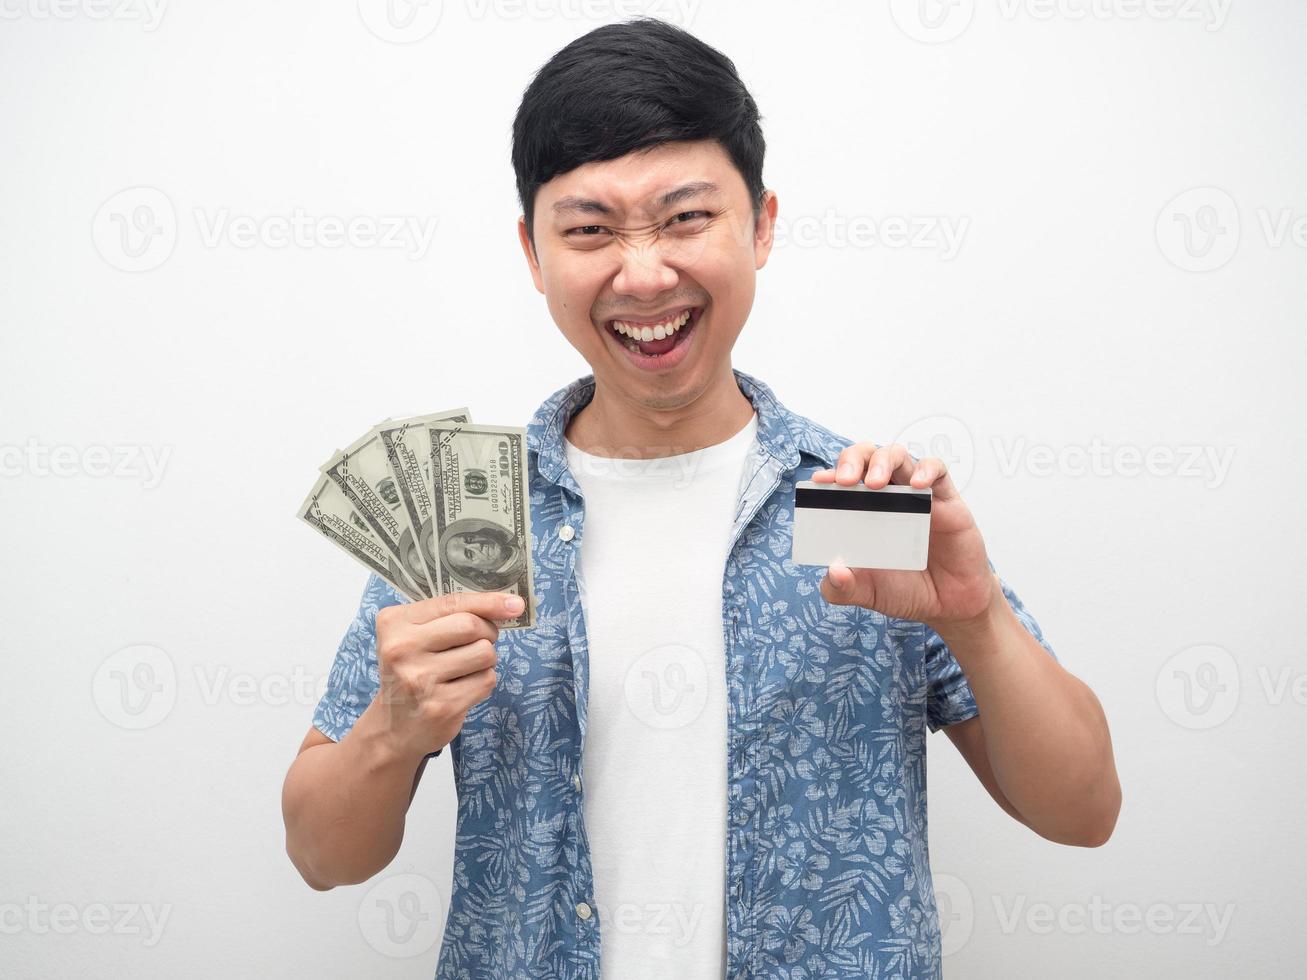 homme montrant de l'argent et une carte de crédit à la main visage souriant se sentir heureux photo